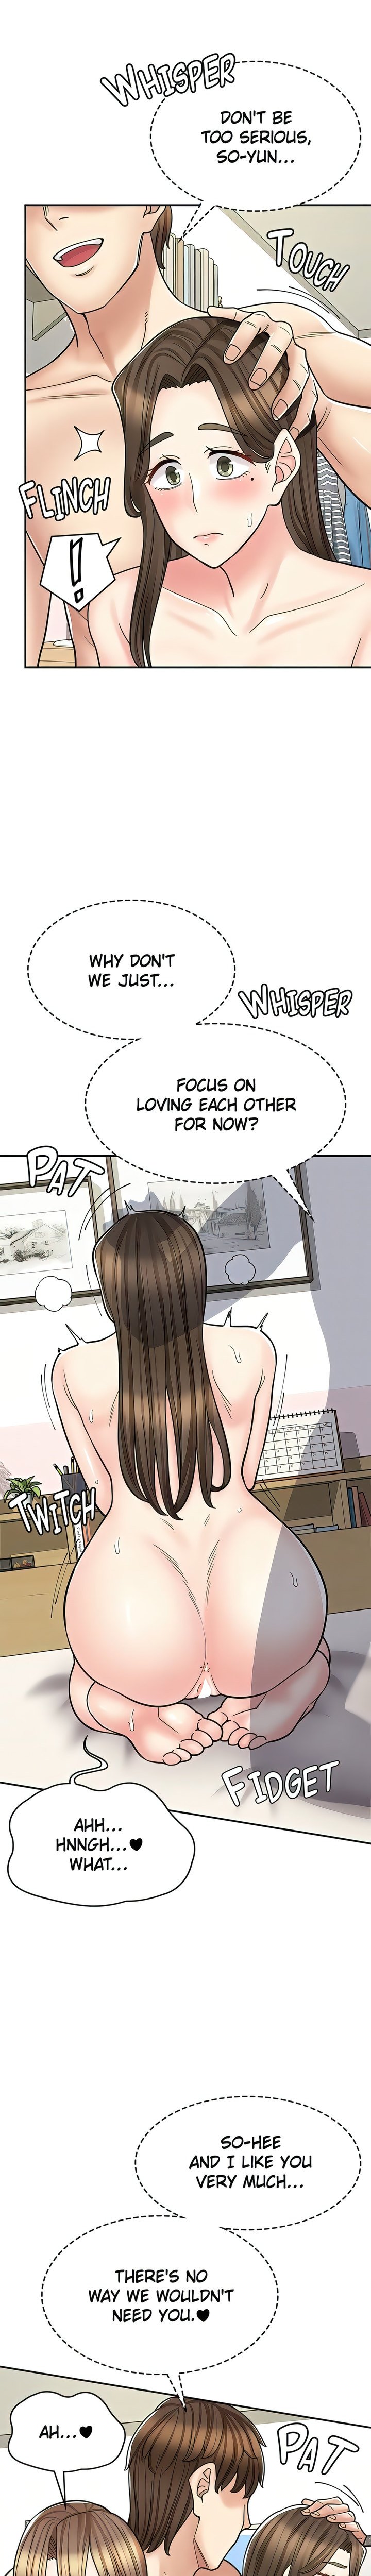 erotic-manga-cafe-girls-chap-41-2